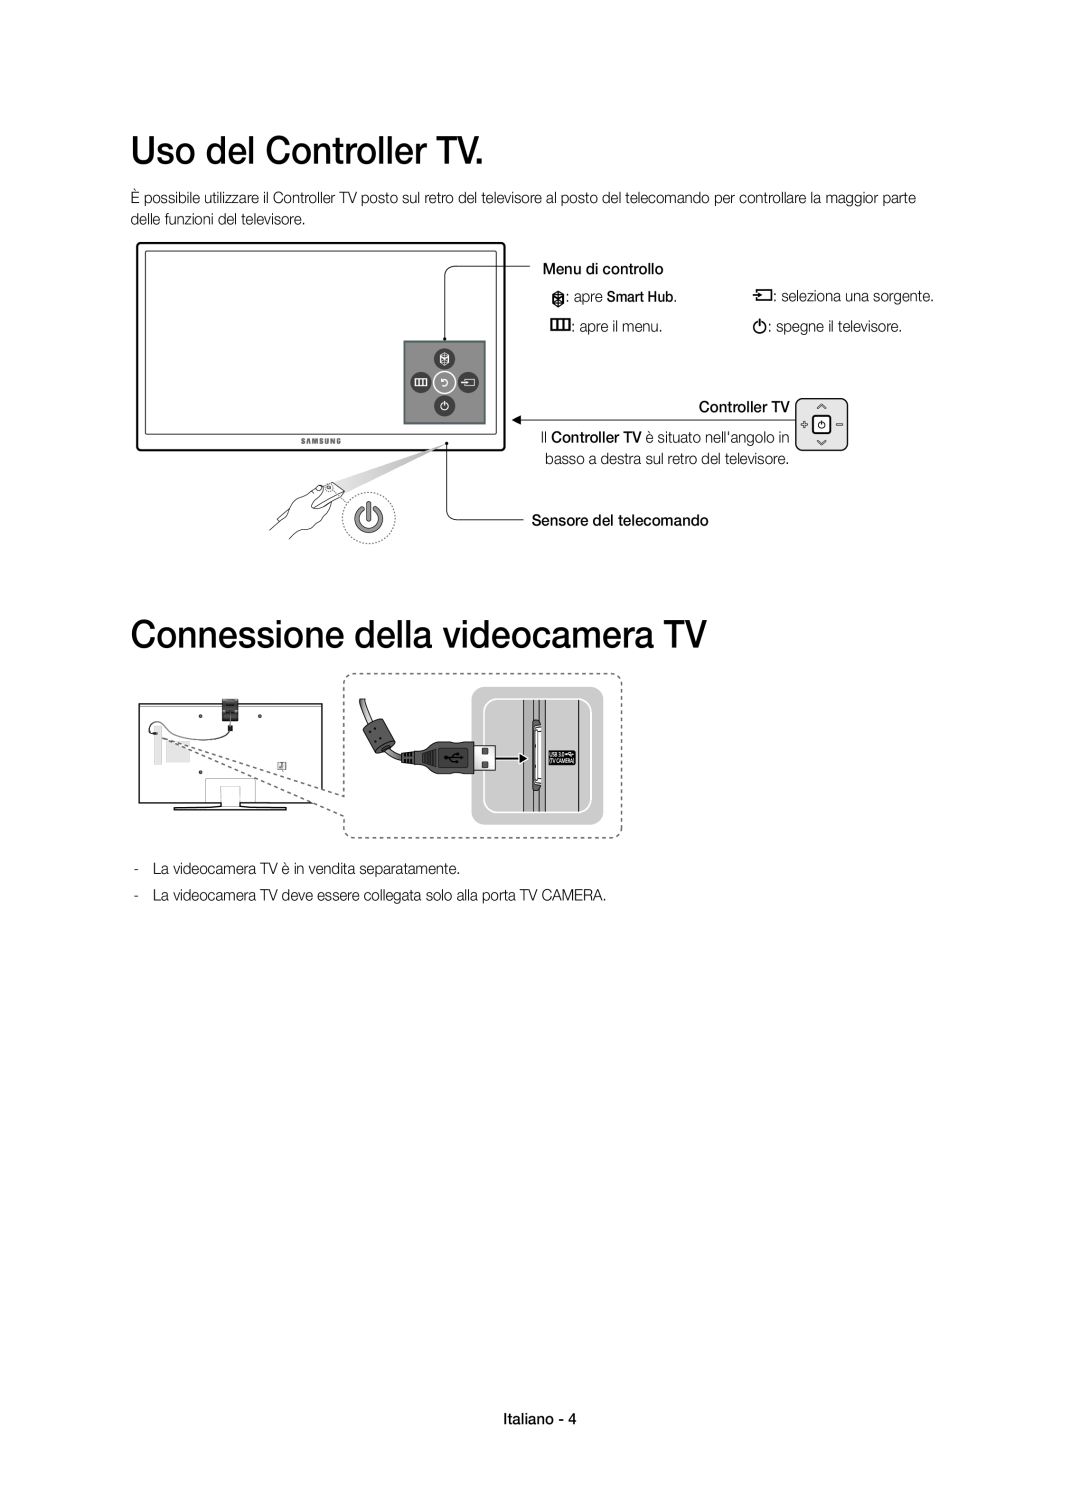 Samsung UE48JU7500TXZT, UE48JU7500TXXC manual Uso del Controller TV, Connessione della videocamera TV, apre Smart Hub 